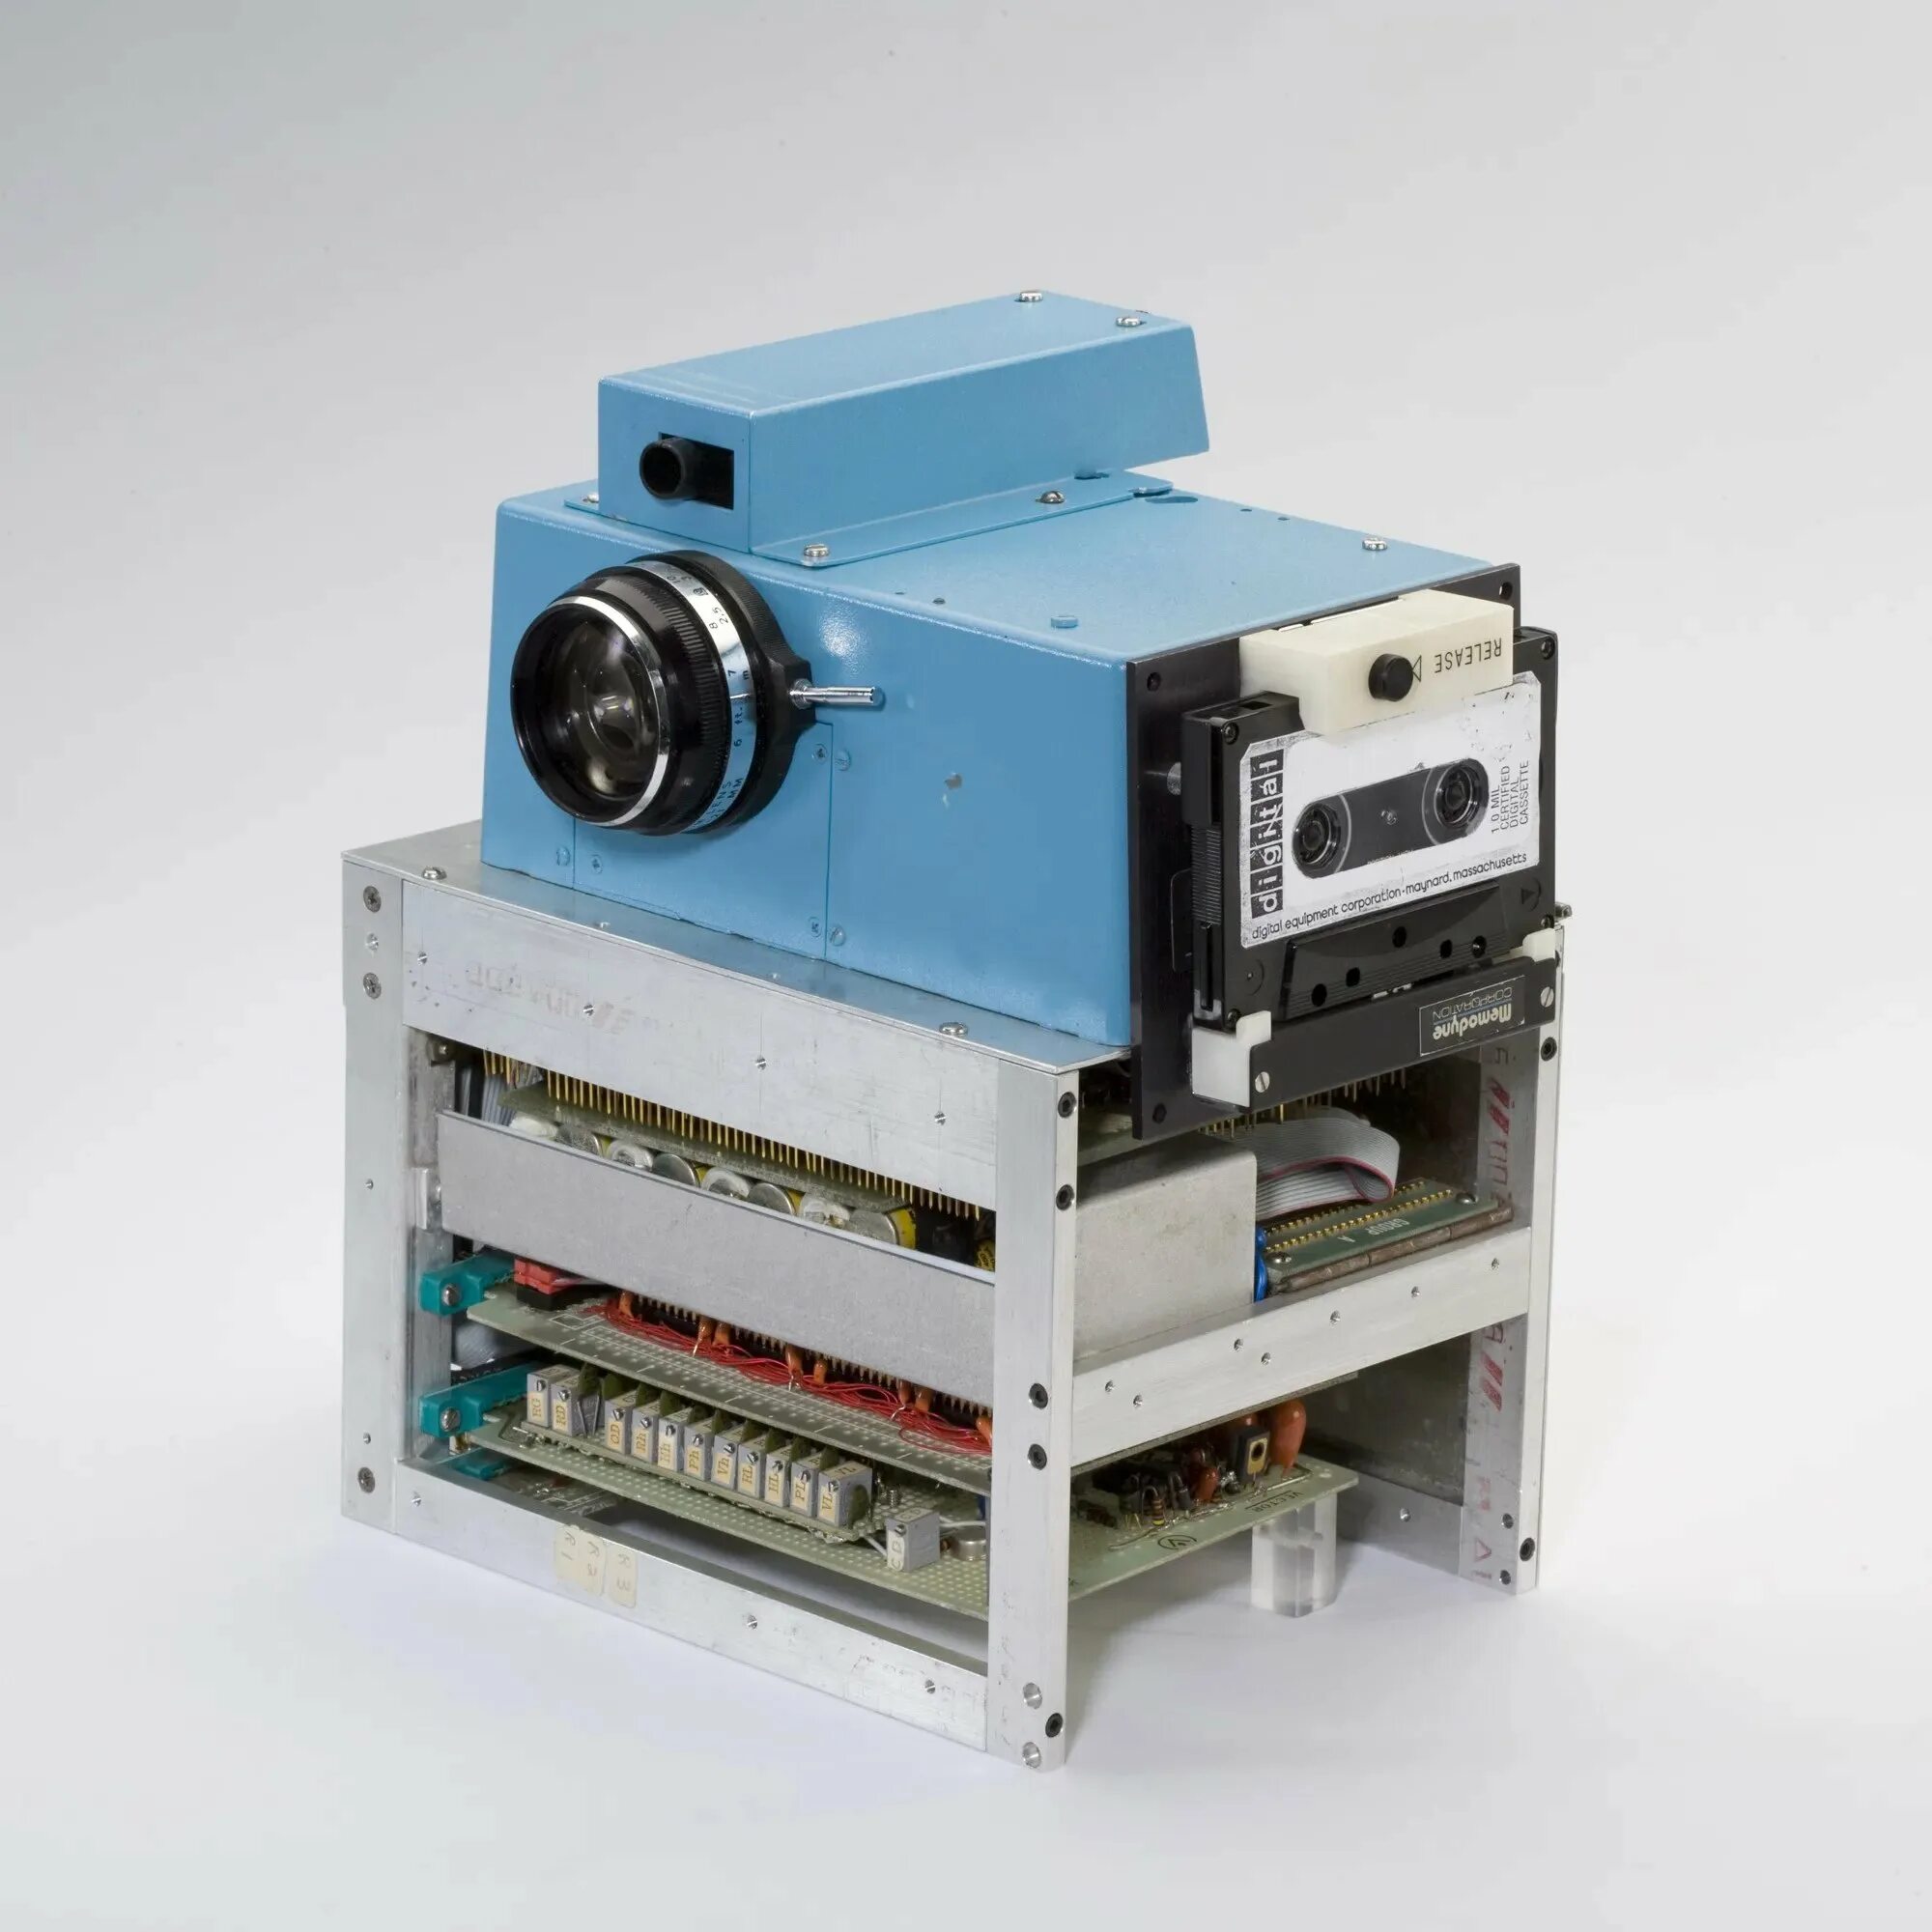 Первая цифровая компания. Первый цифровой фотоаппарат Кодак 1975. Первая цифровая камера Кодак 1975. Стив Сассон Кодак. Цифровую камеру в Kodak в 1975 году.